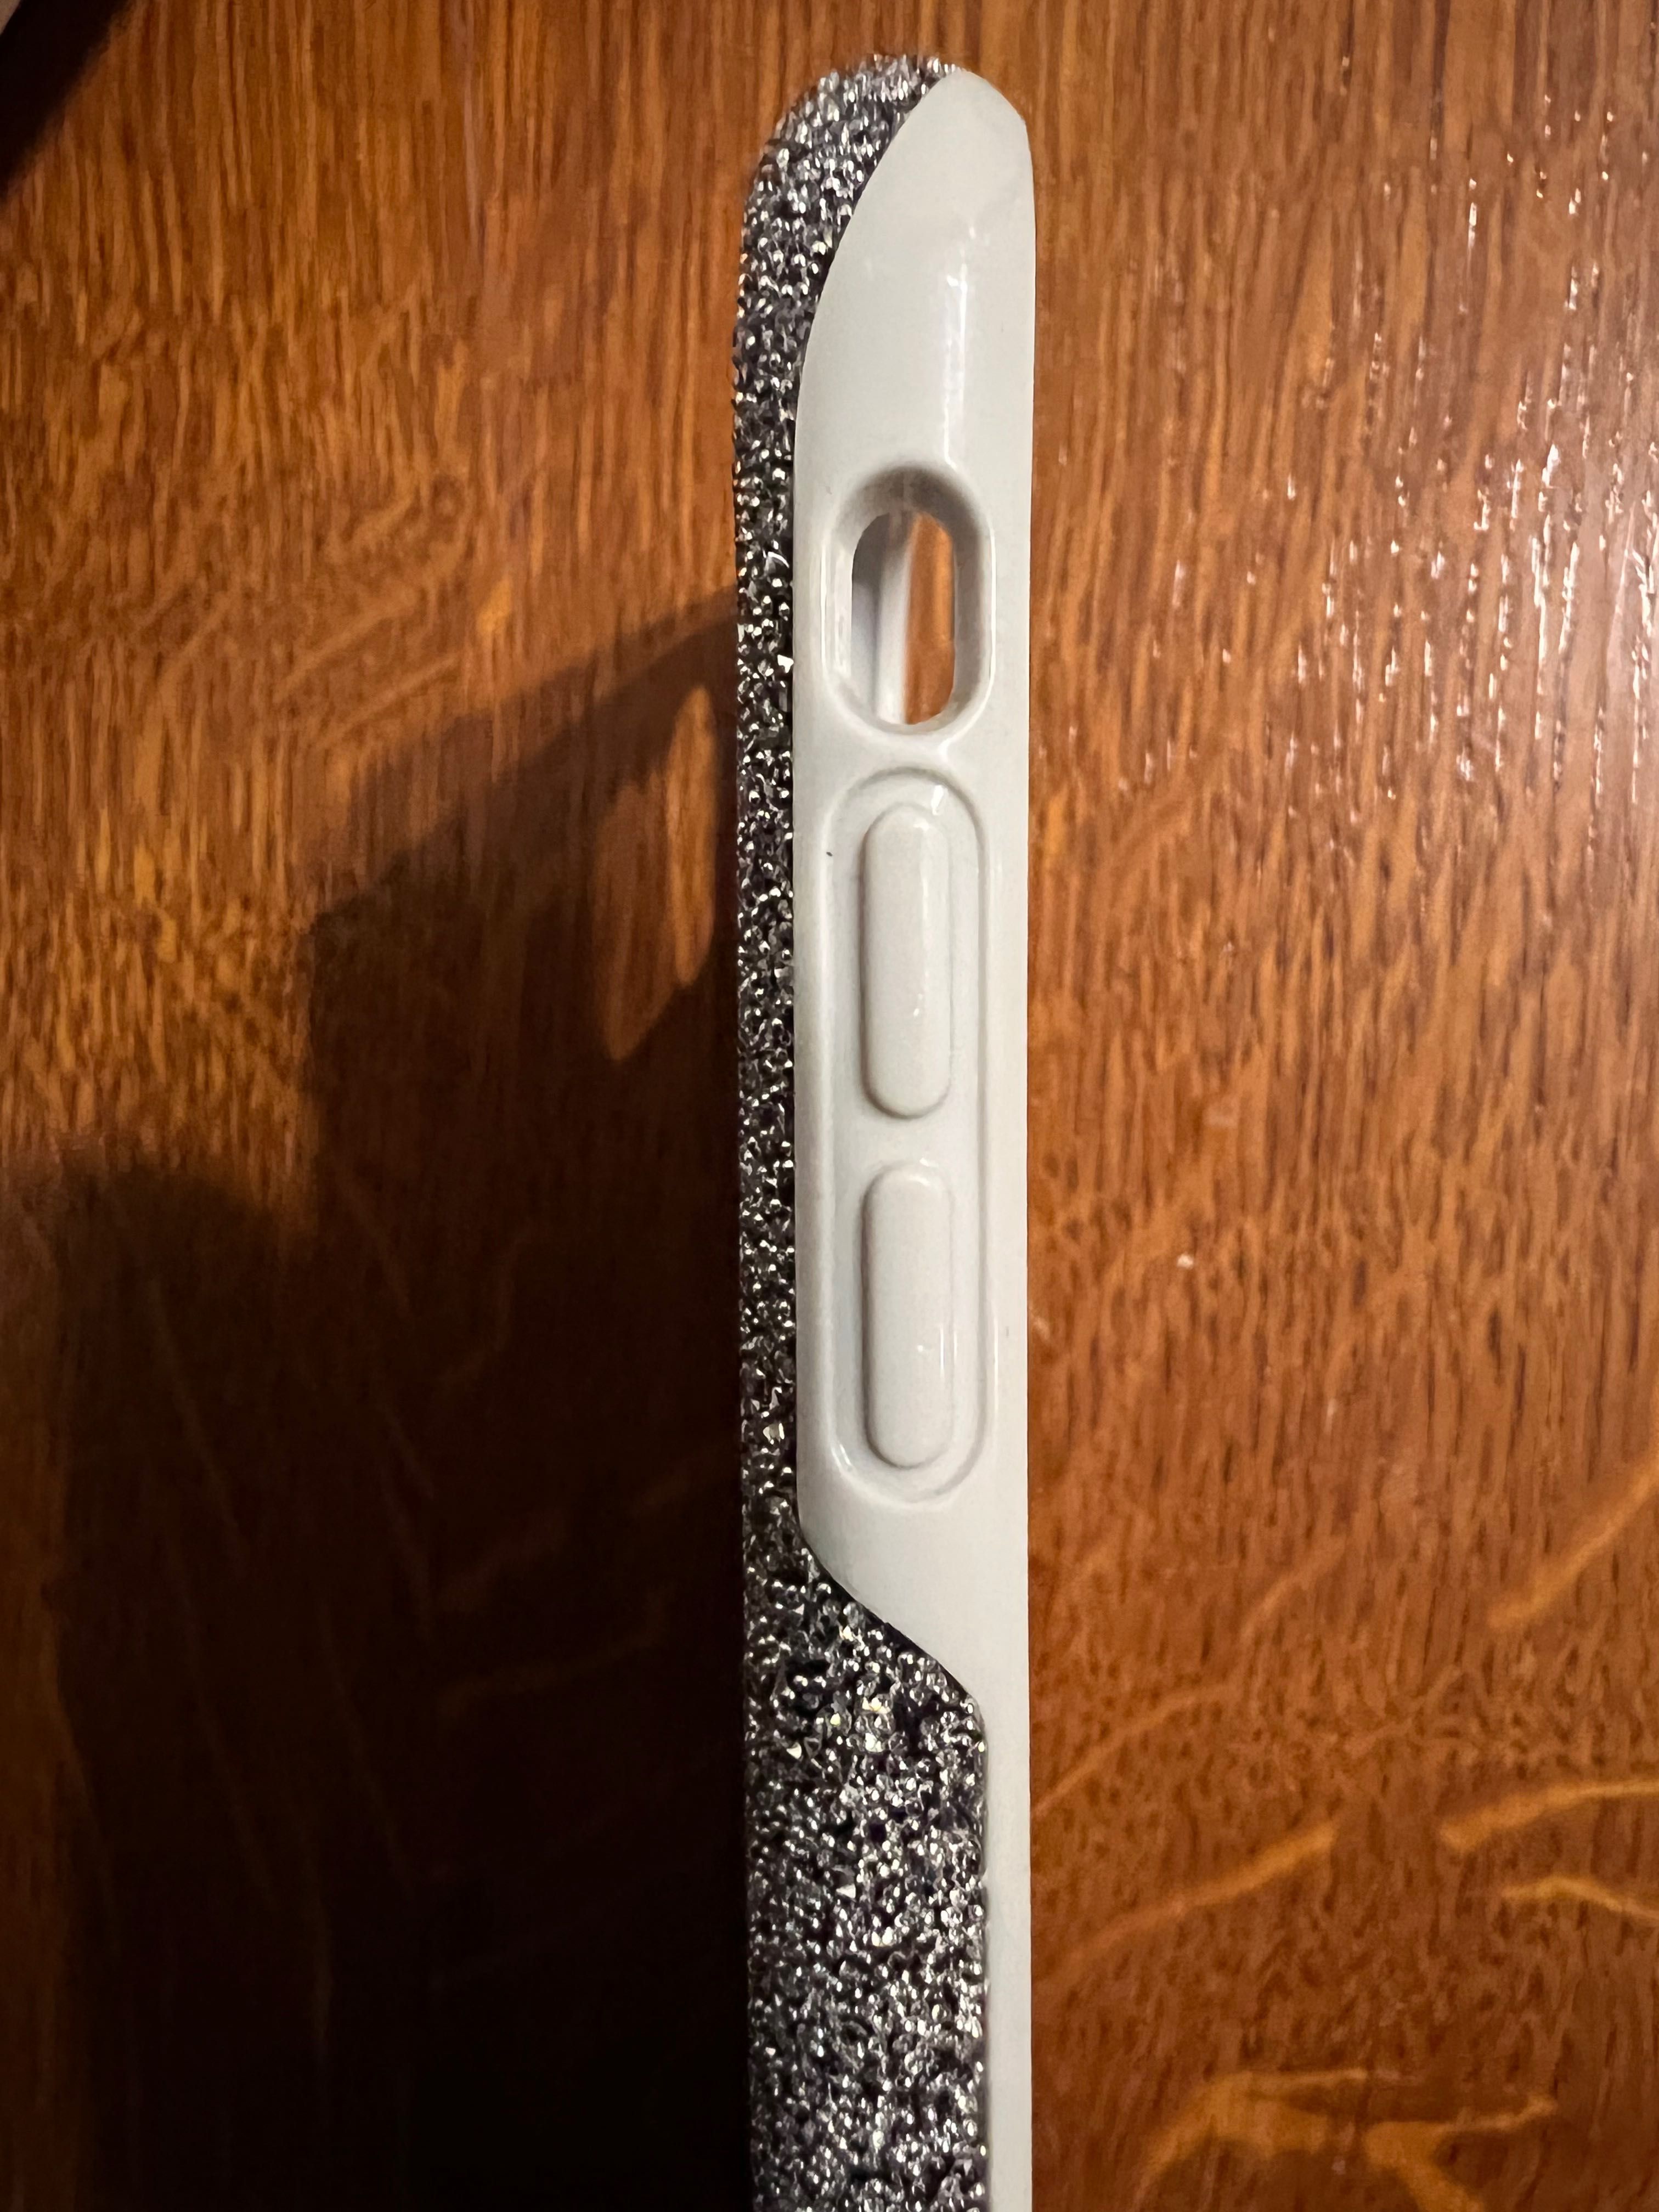 Новый оригинальный чехол/накладка Swarovski на iPhone XS Max